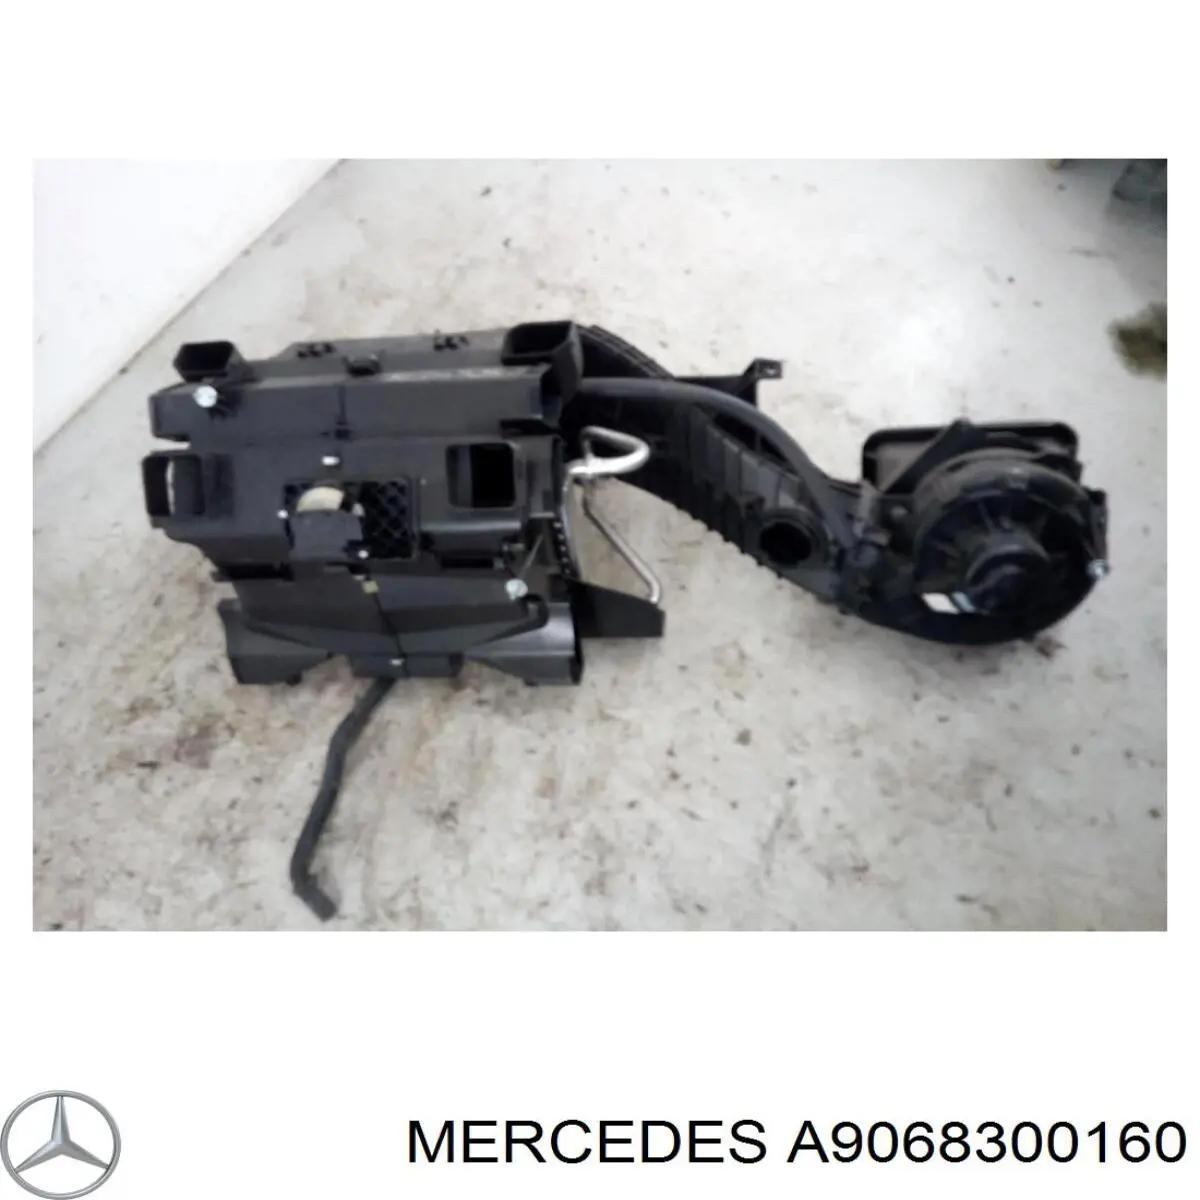 Caja de ventilador habitáculo completo Mercedes A9068300160